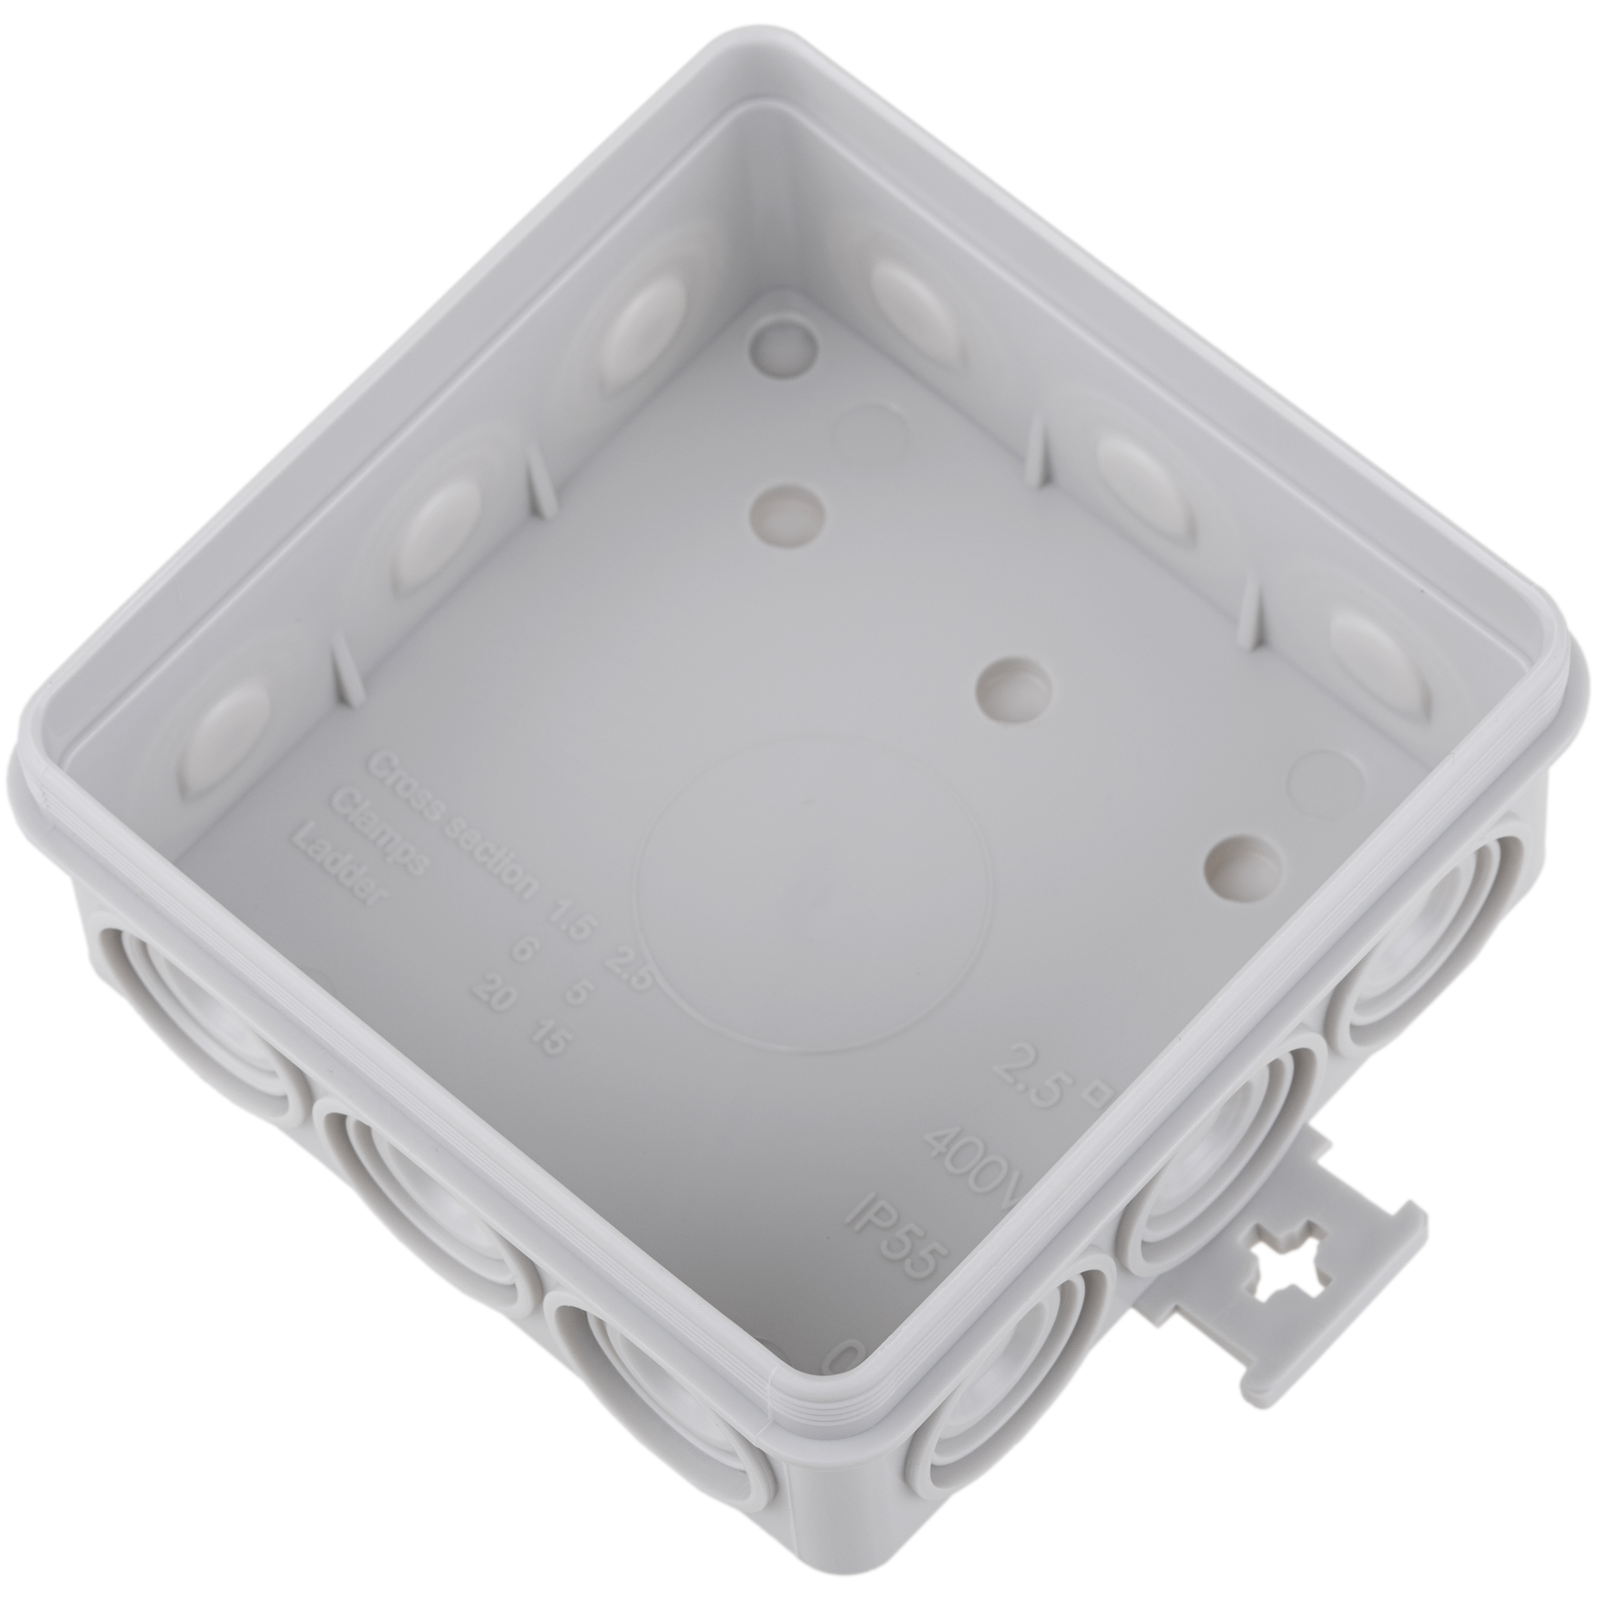 Caja estanca de superficie rectangular IP55 200 x 100 x 70 mm - Cablematic